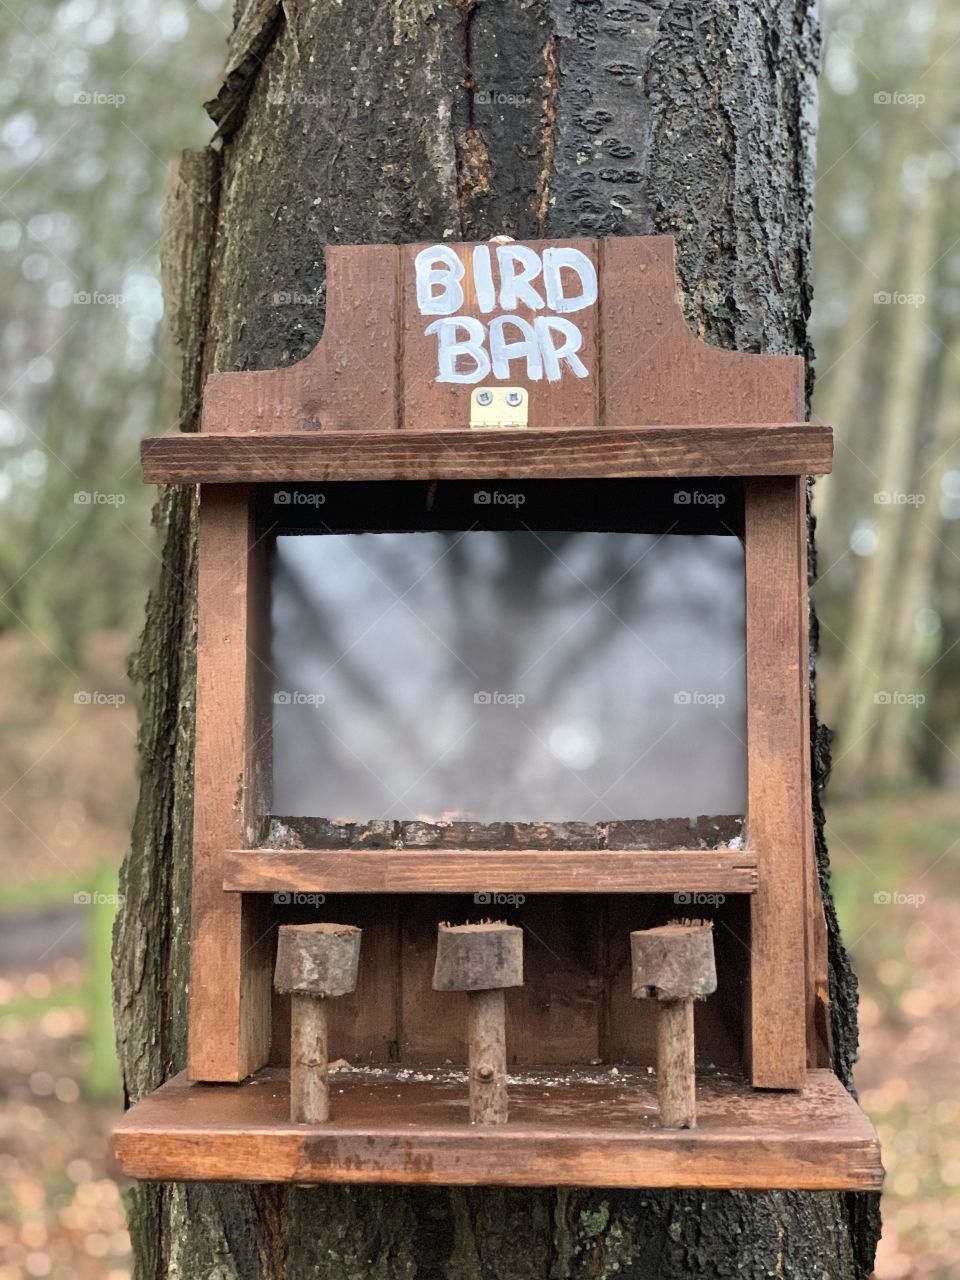 Bird bar 